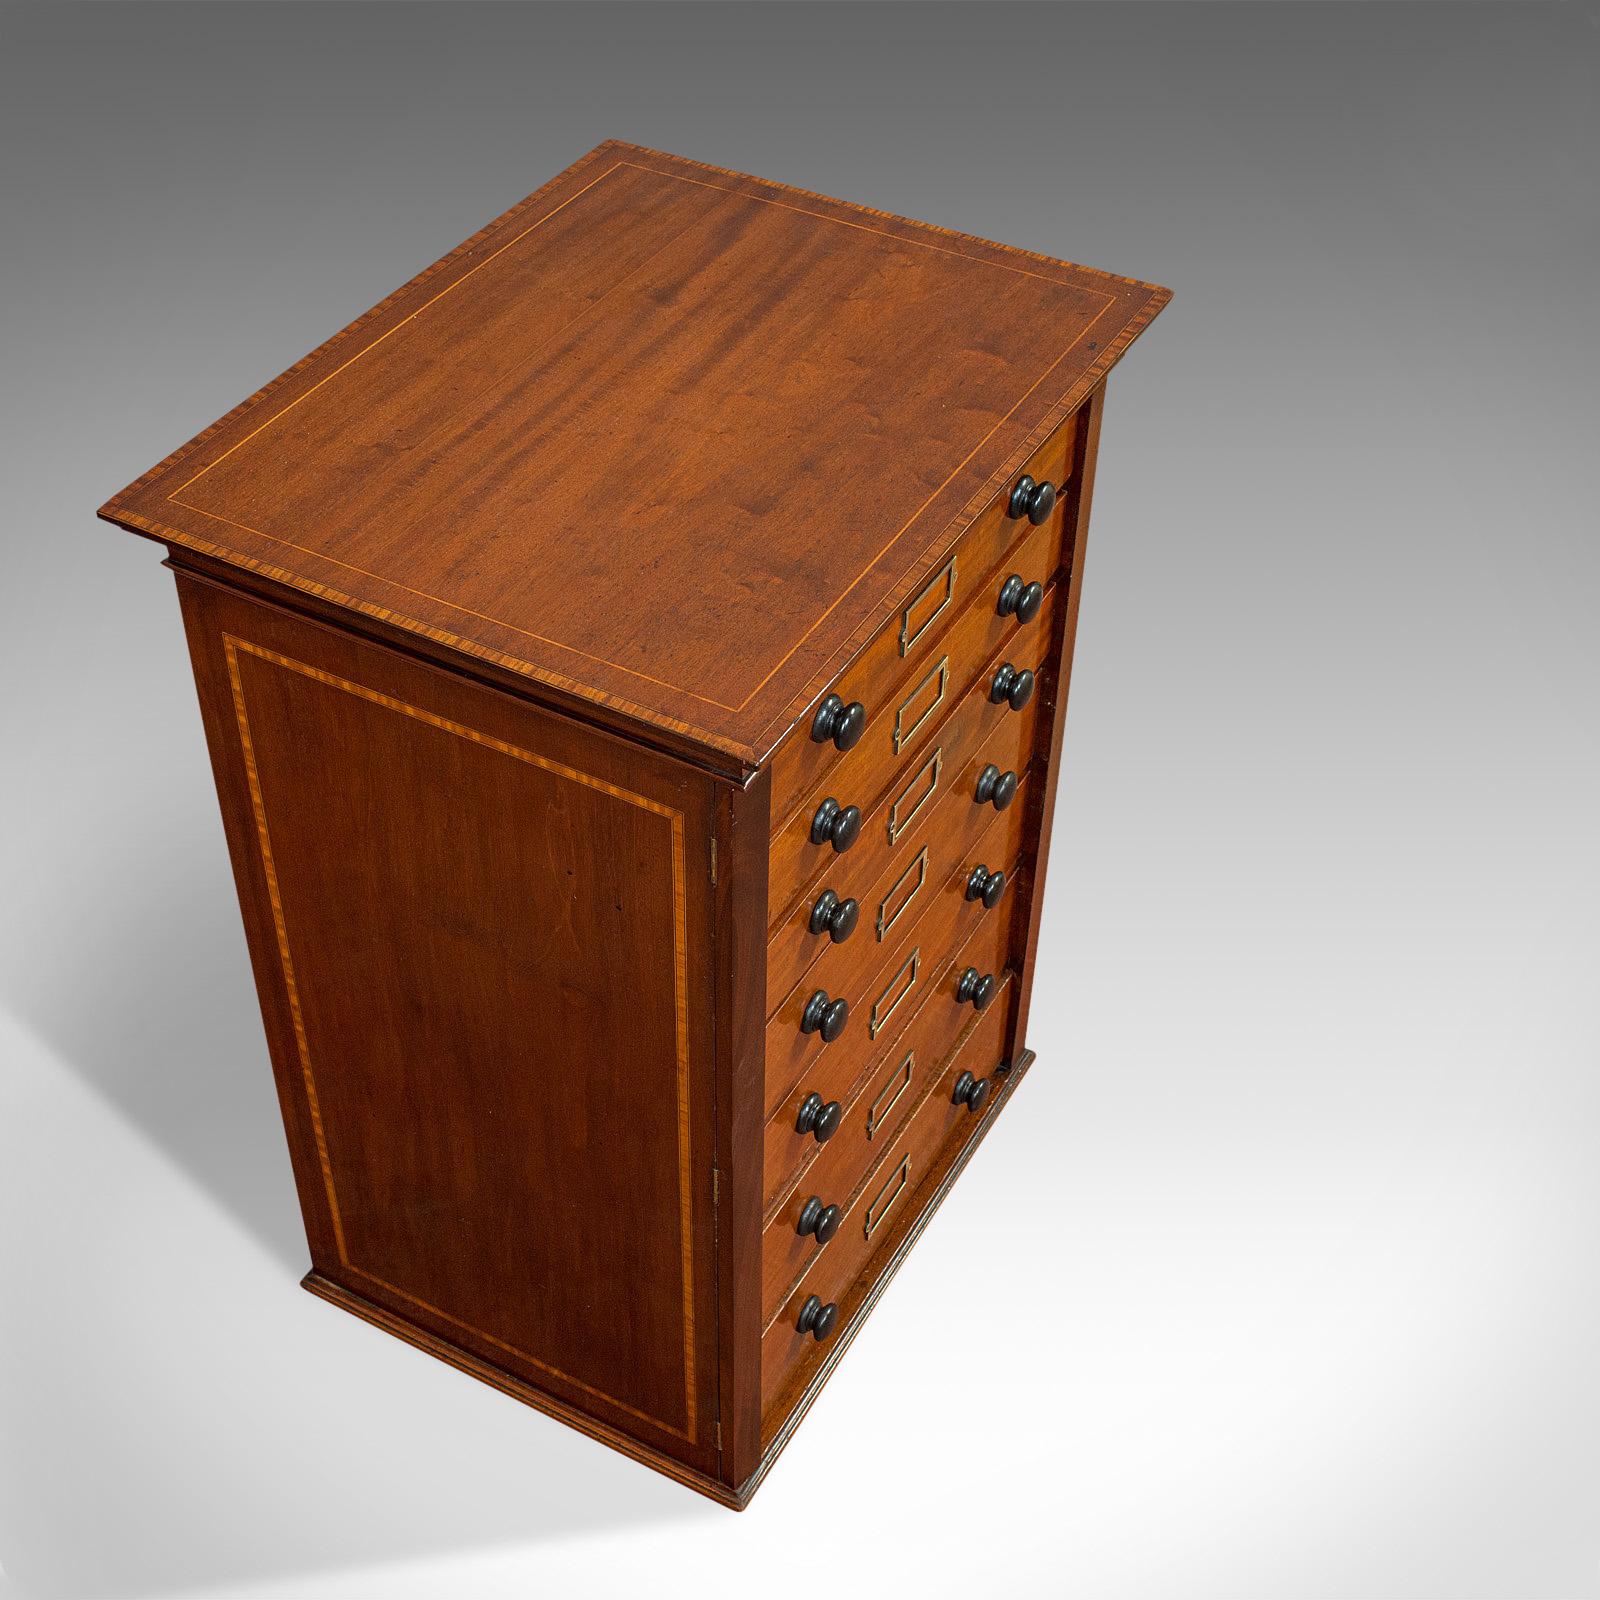 Antique Specimen Cabinet, English, Mahogany, Chest of Drawers, Shop, Edwardian 1